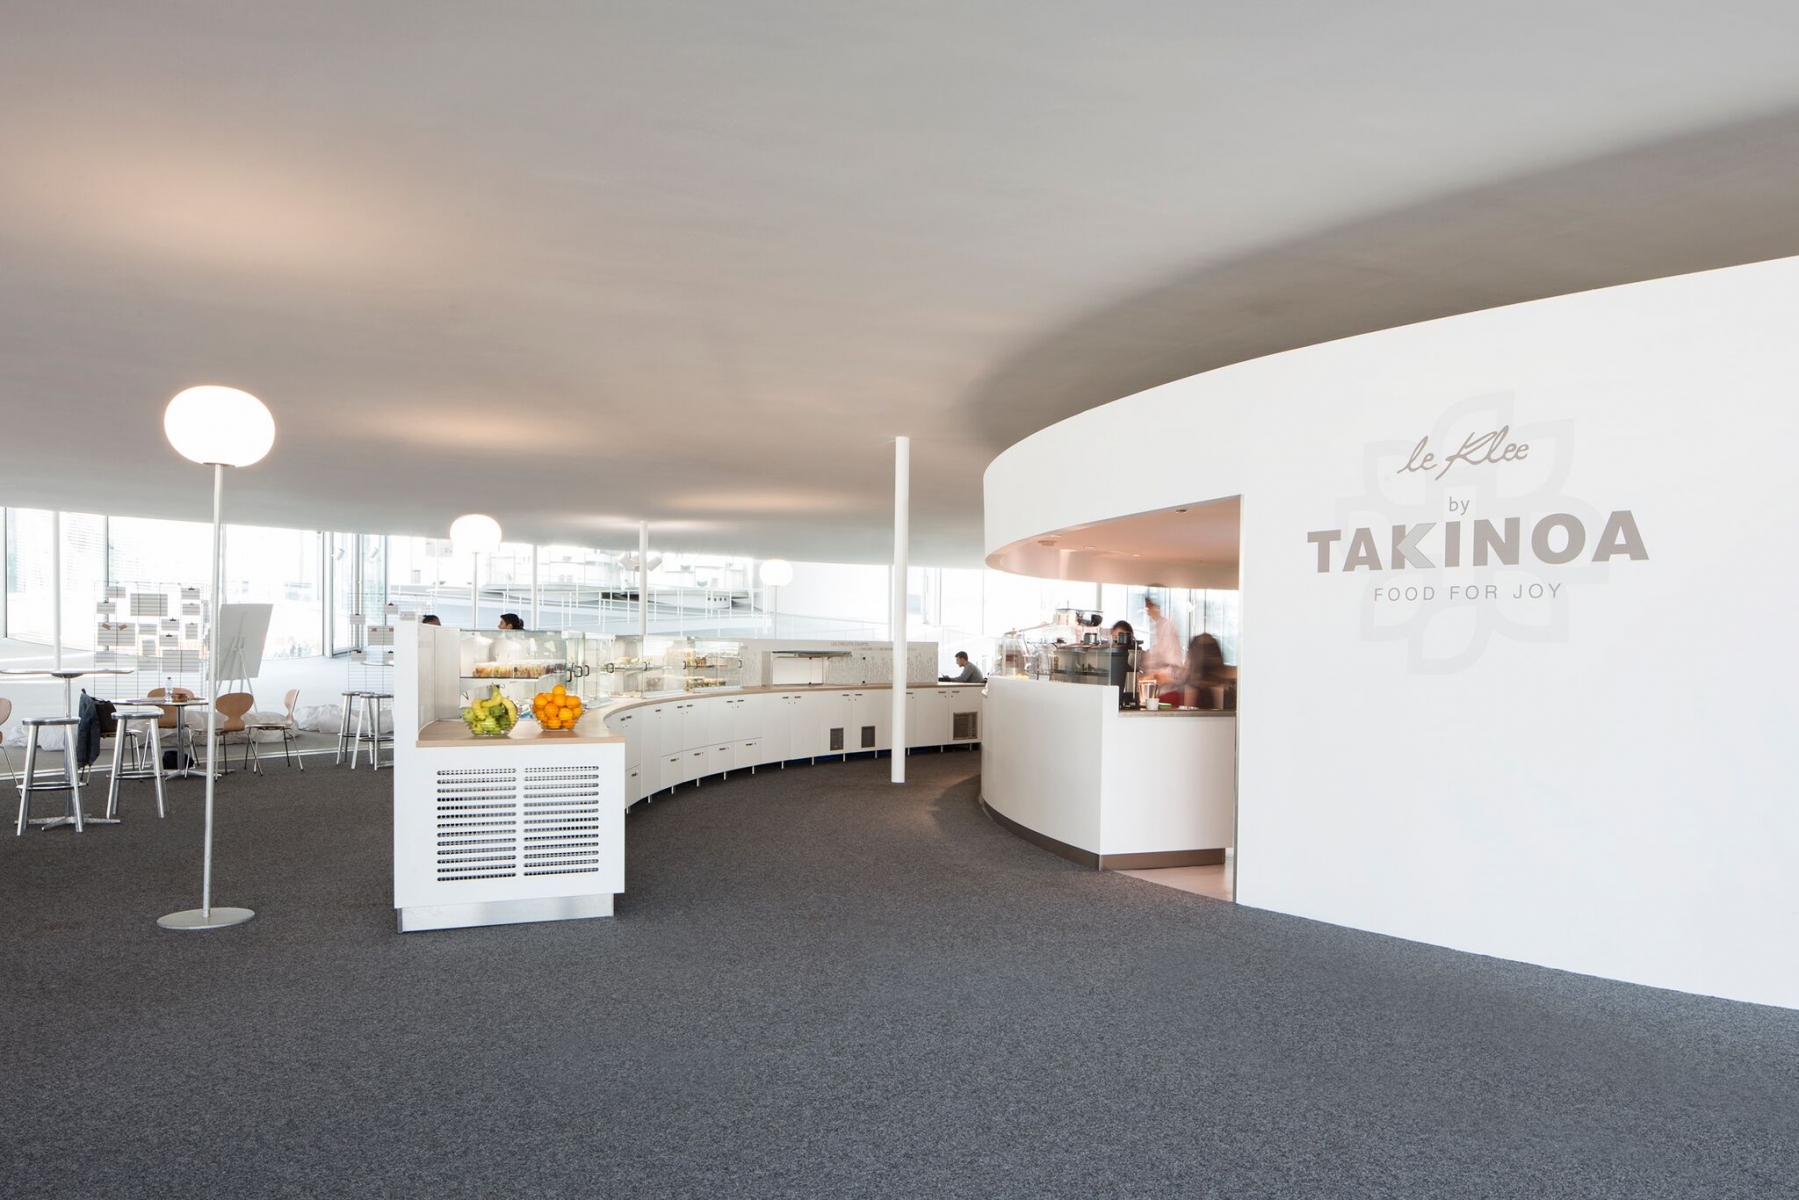 La chaîne glandoise Takinoa surfe sur la mode du "vegan" et du "bien-manger" en ouvrant sa septième boutique au Learning Center de l'EPFL.